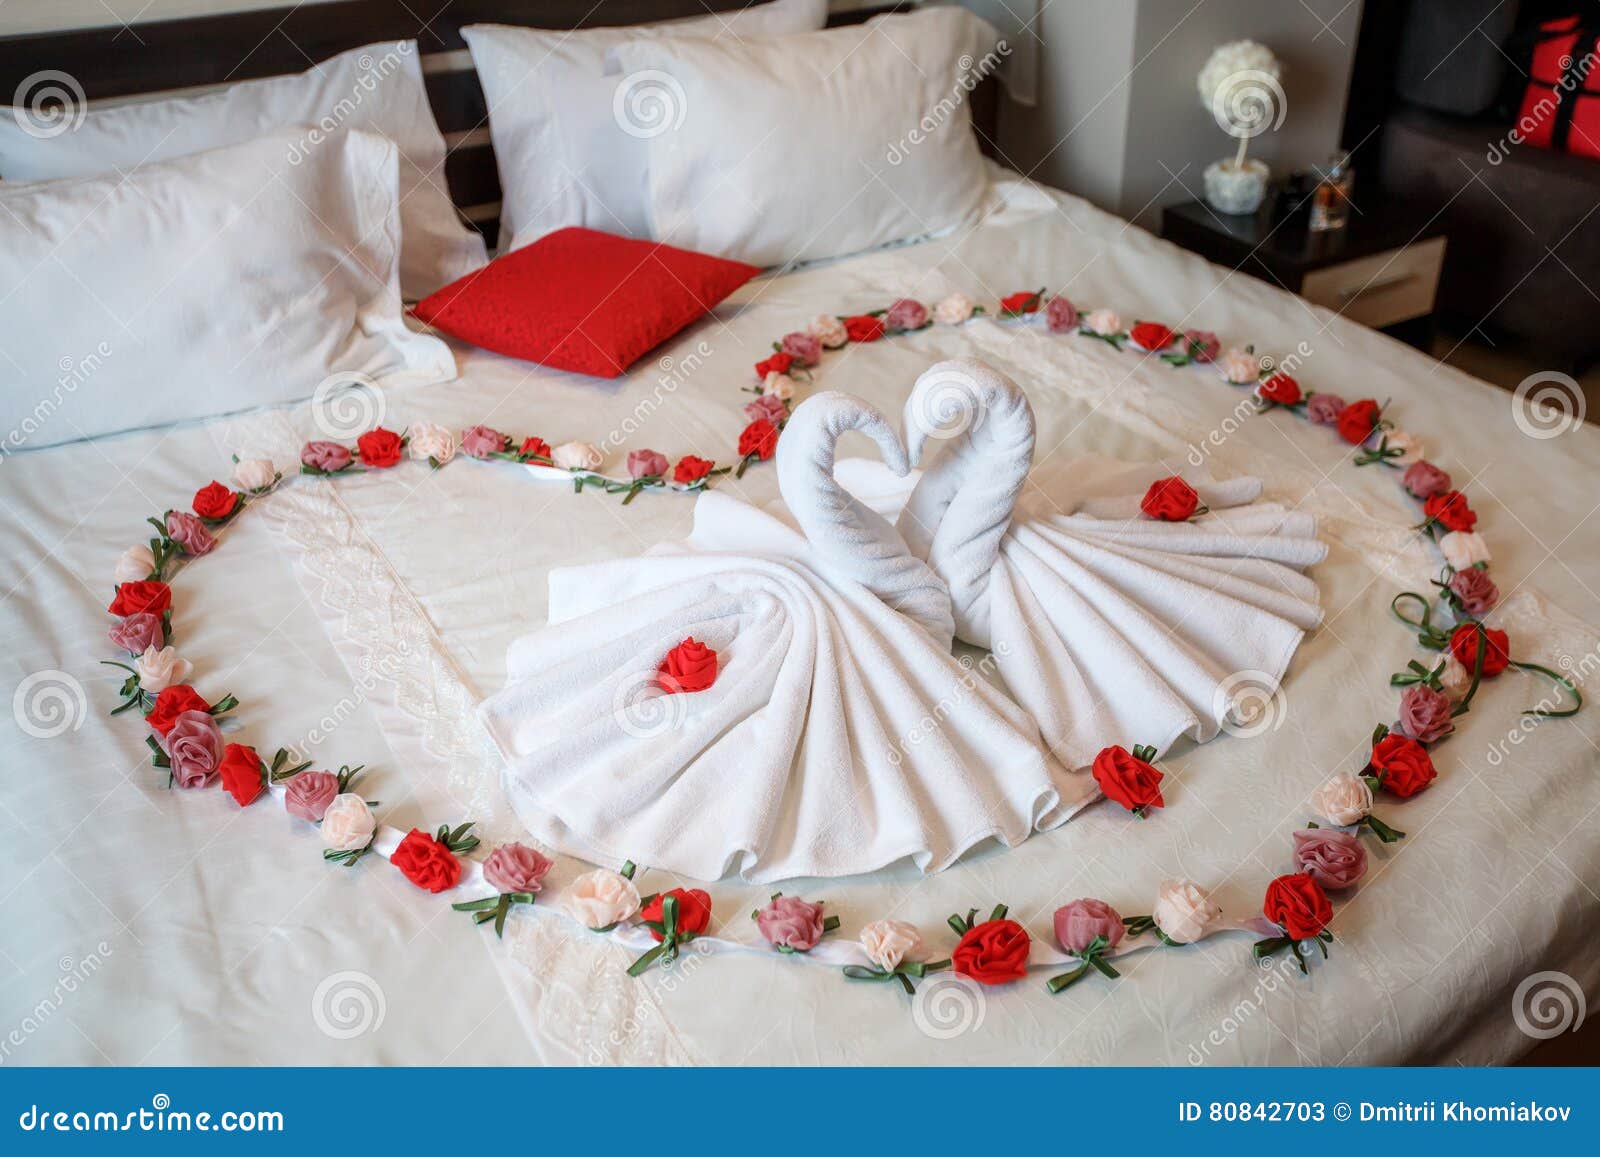 photo stock deux cygnes faits de serviettes formant la forme de coeur sur le lit image